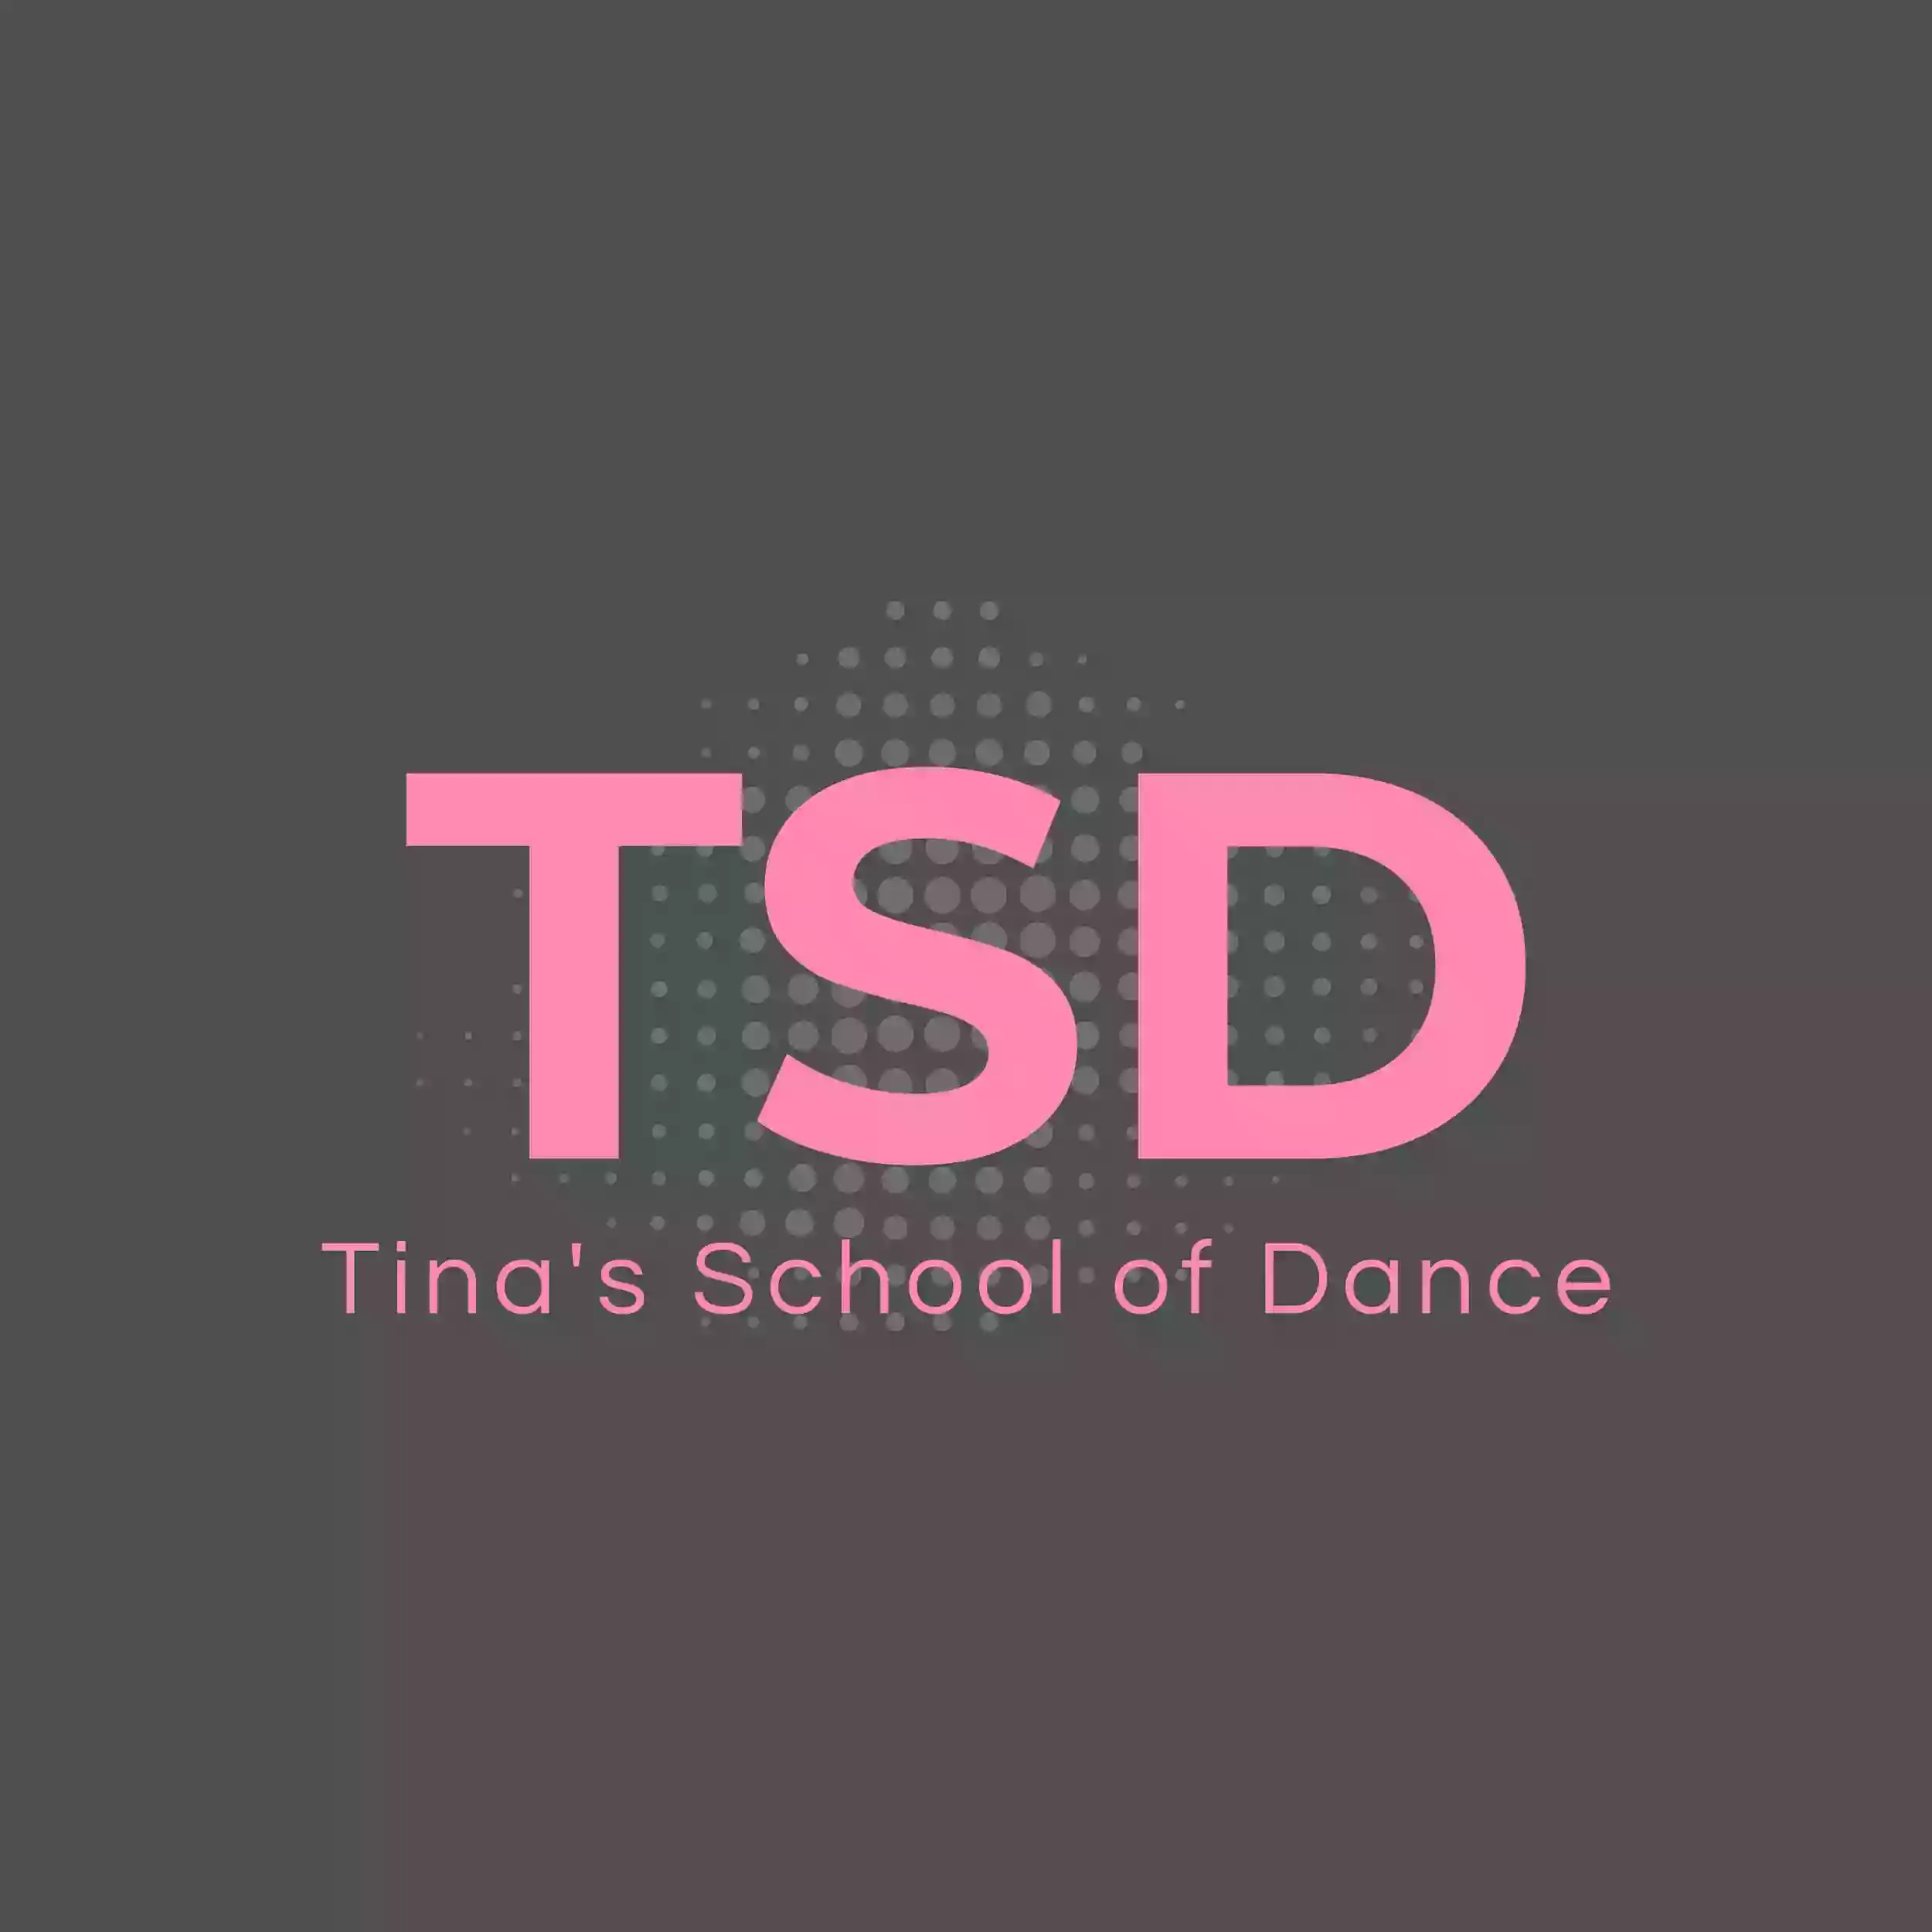 Tina's School of Dance